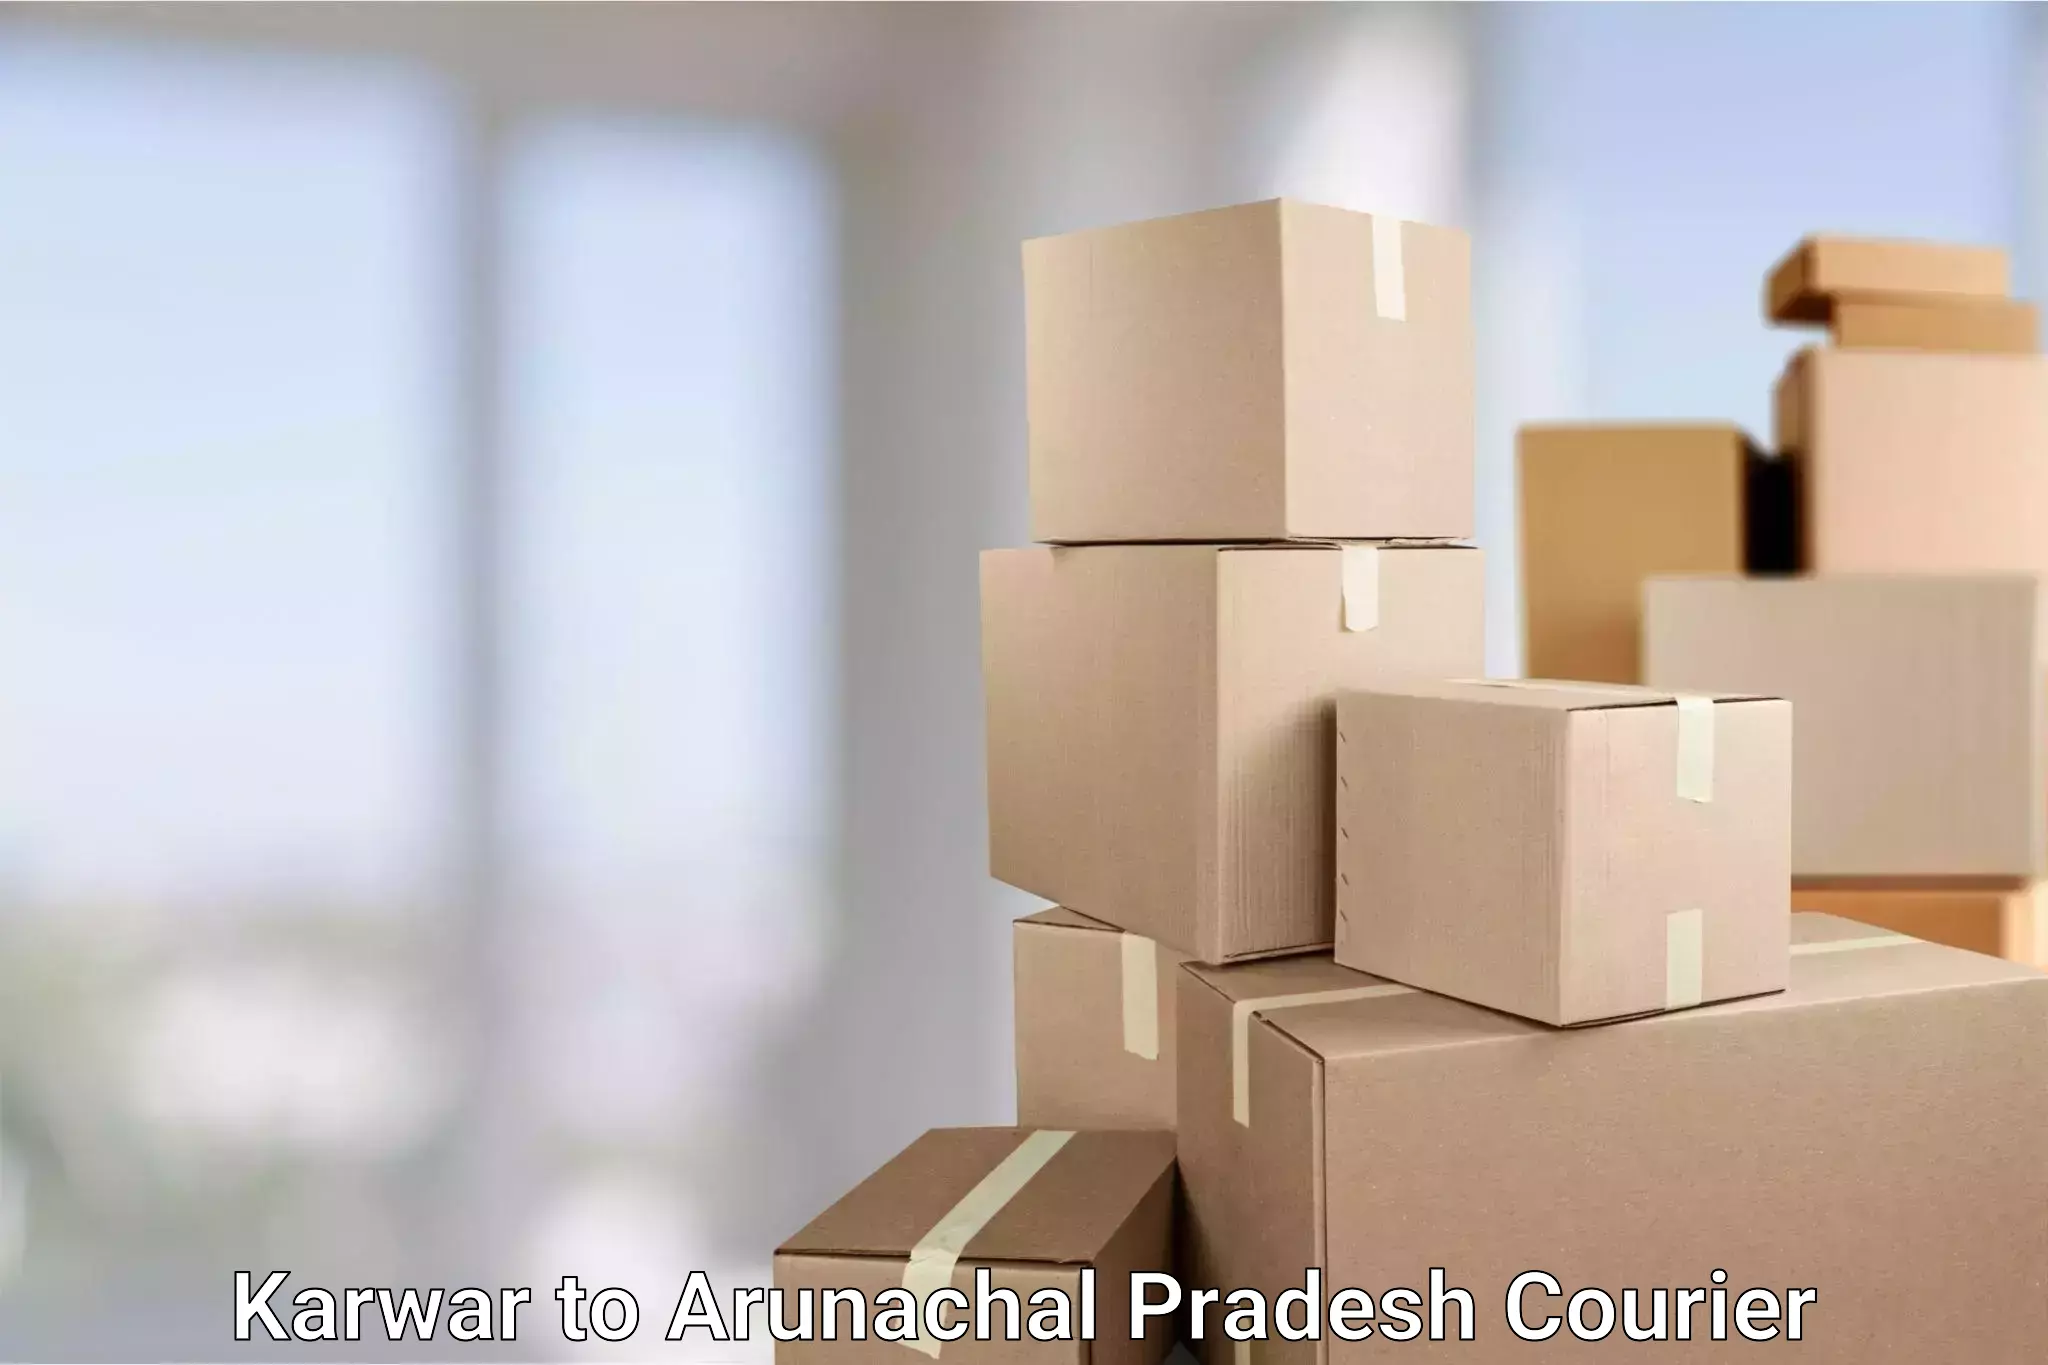 Next-day delivery options Karwar to Arunachal Pradesh